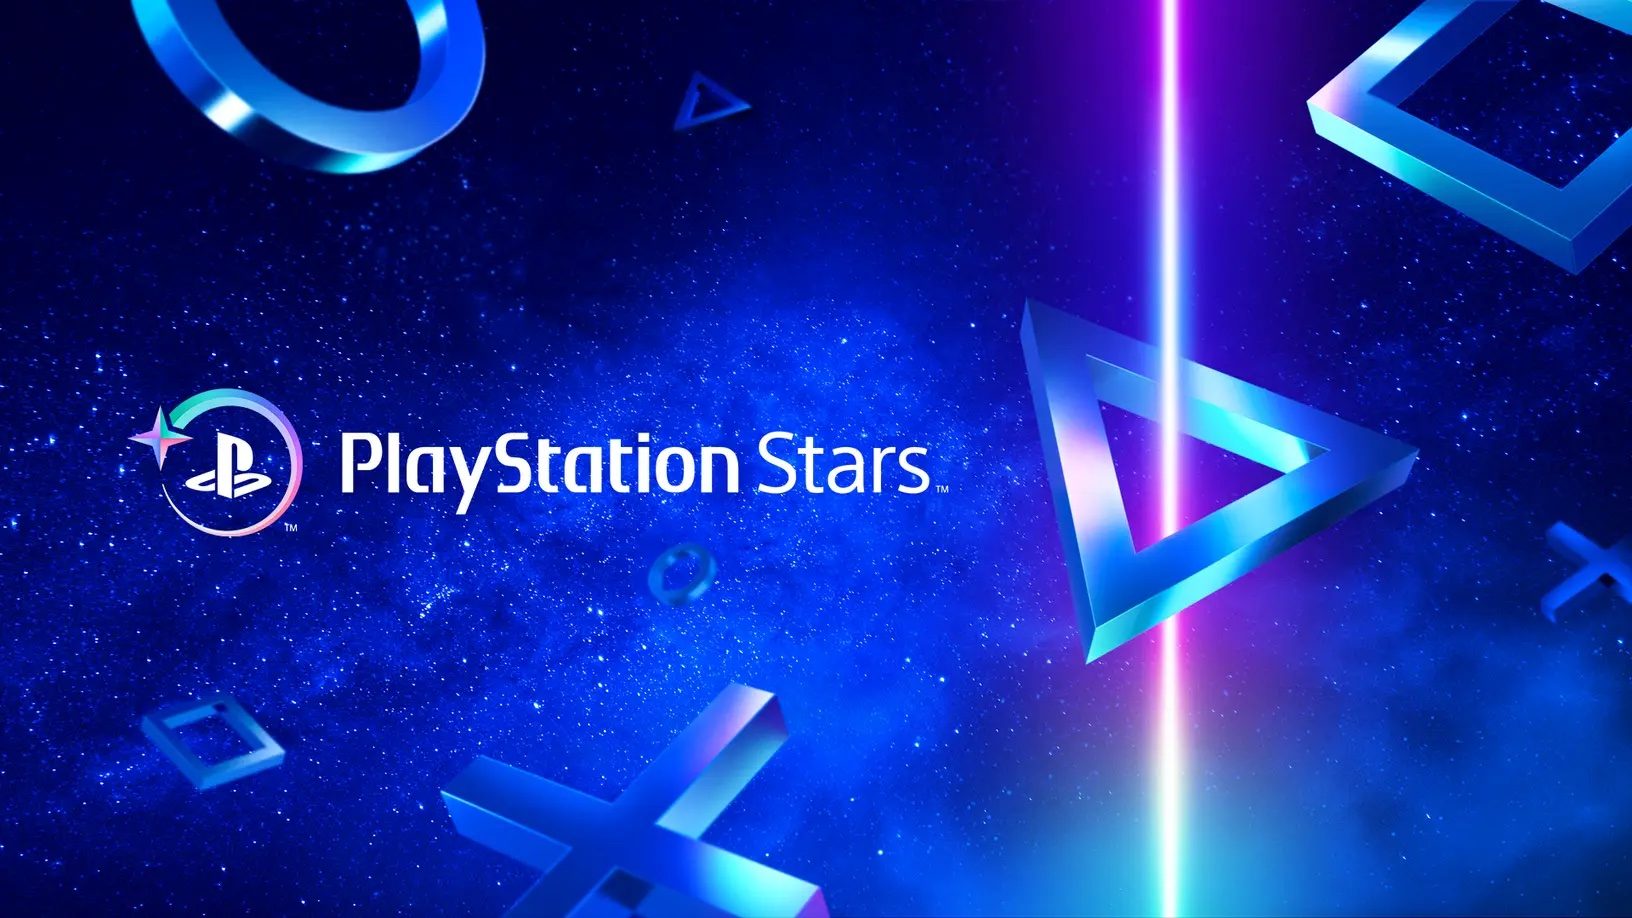 PlayStation Stars recebe novos colecionáveis em novembro